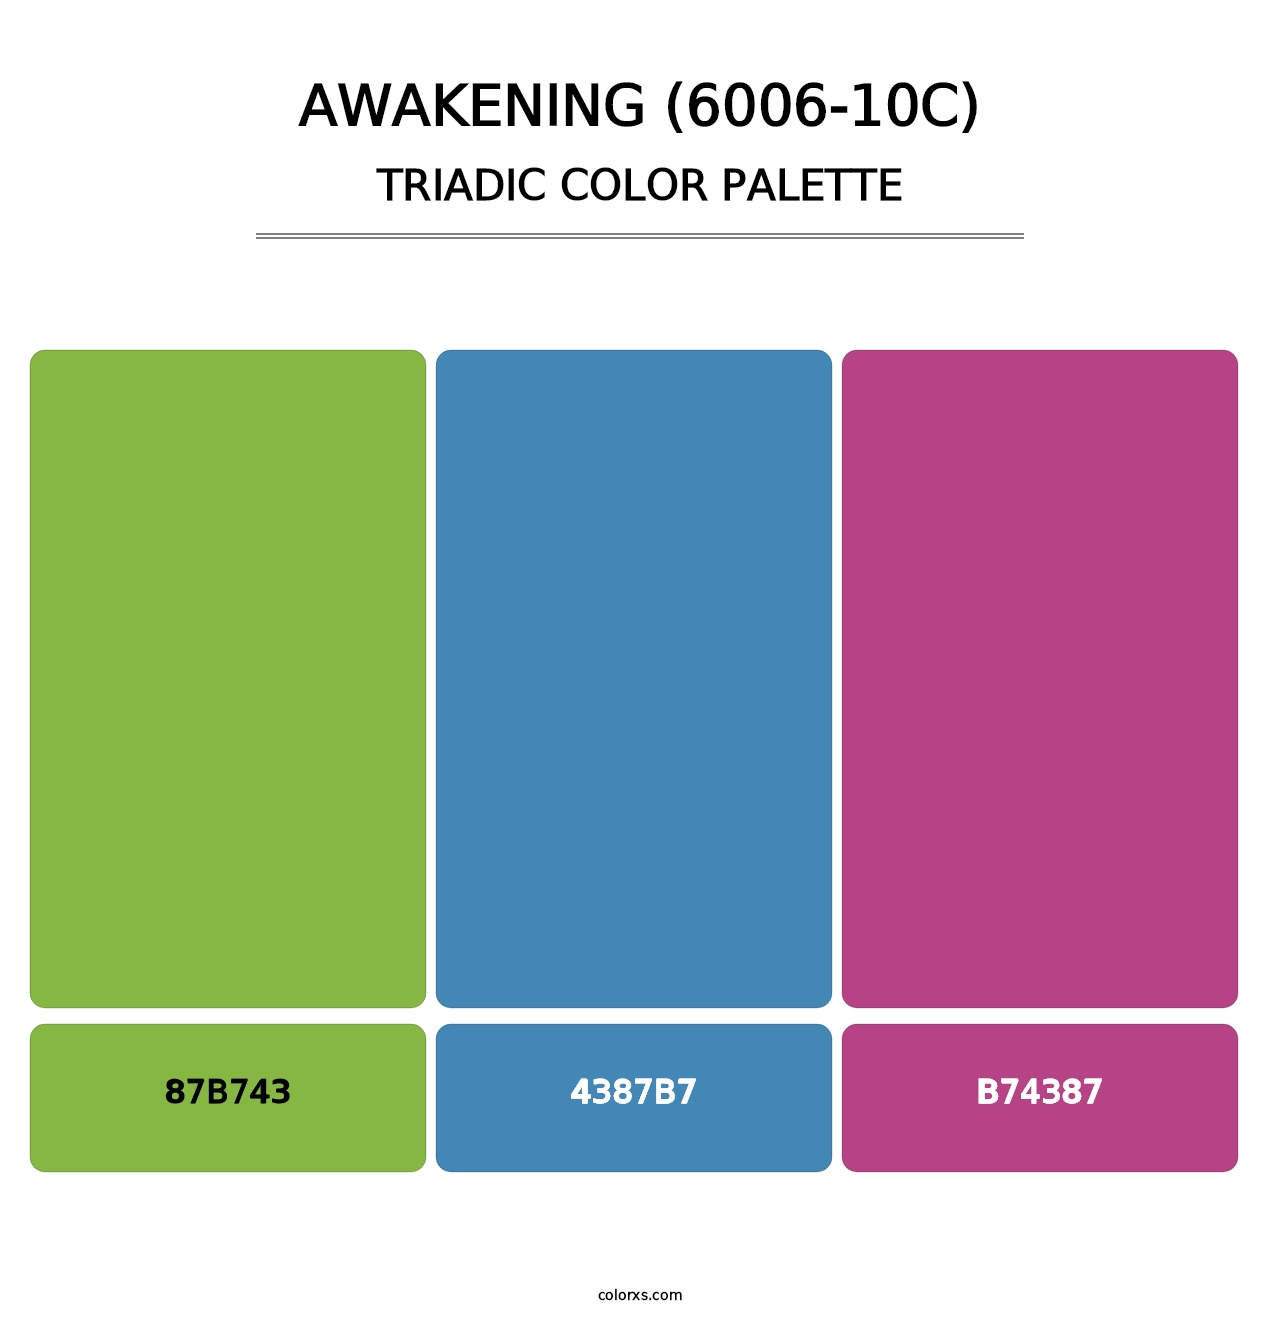 Awakening (6006-10C) - Triadic Color Palette